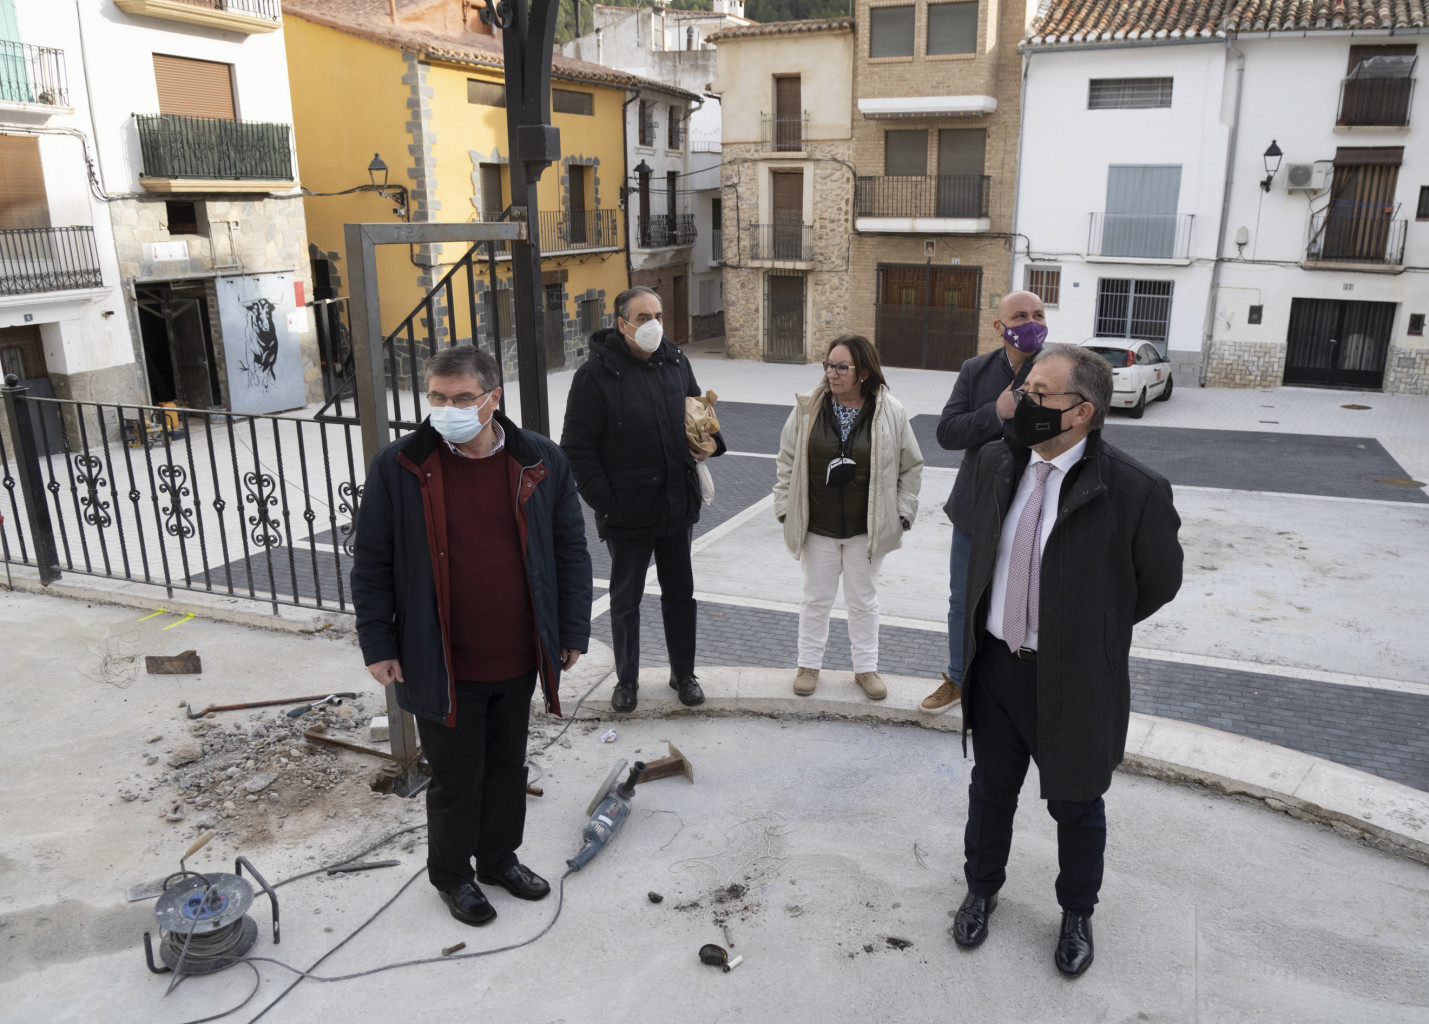 La Diputación de Castellón inyectó 513.000 euros en 2021 en Arañuel y Ludiente, duplicando ampliamente la inversión de 2019